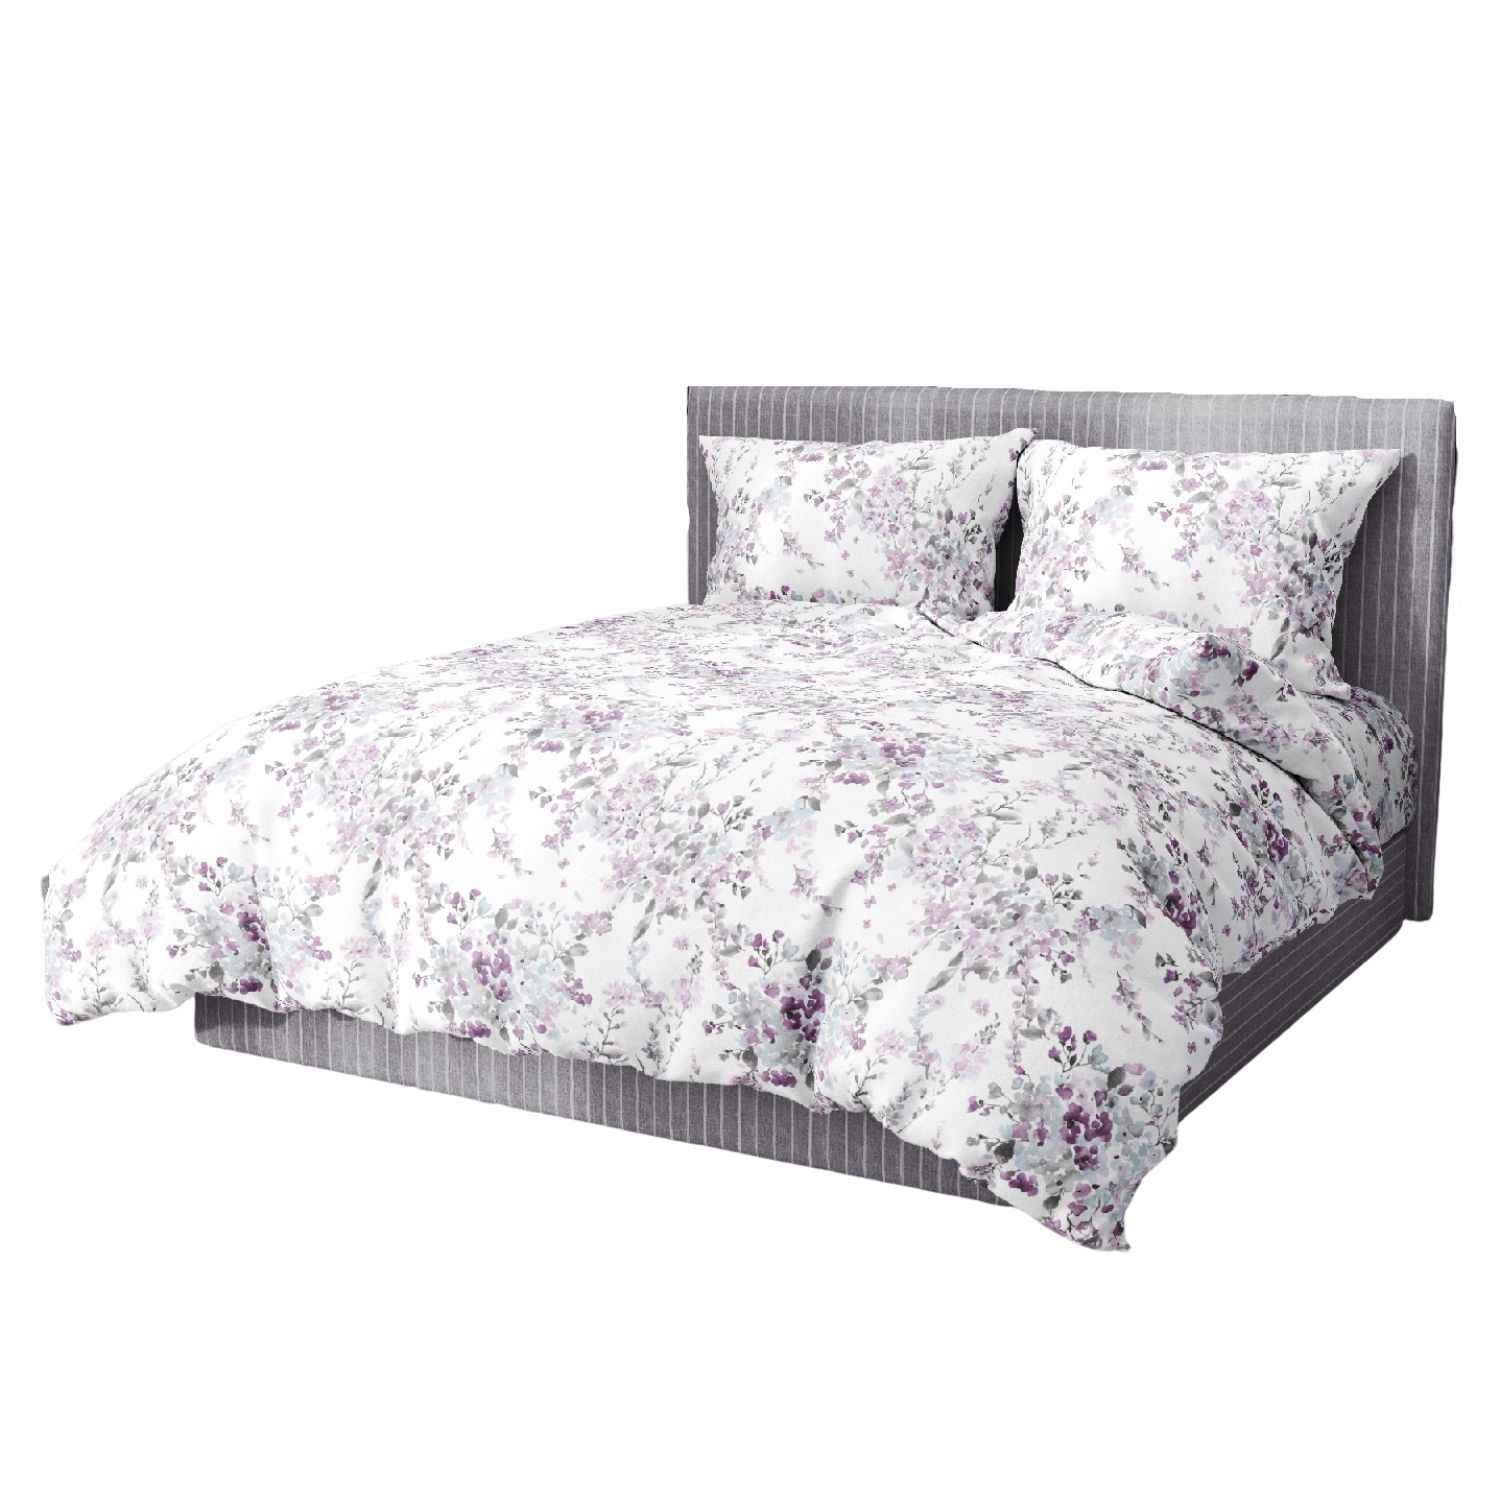 acquerello-copripiumino-puro-cotone-quadrifoglio-bouquet-fiorato-fiorellini-fiori-lilla-rosa-bianco-grigio